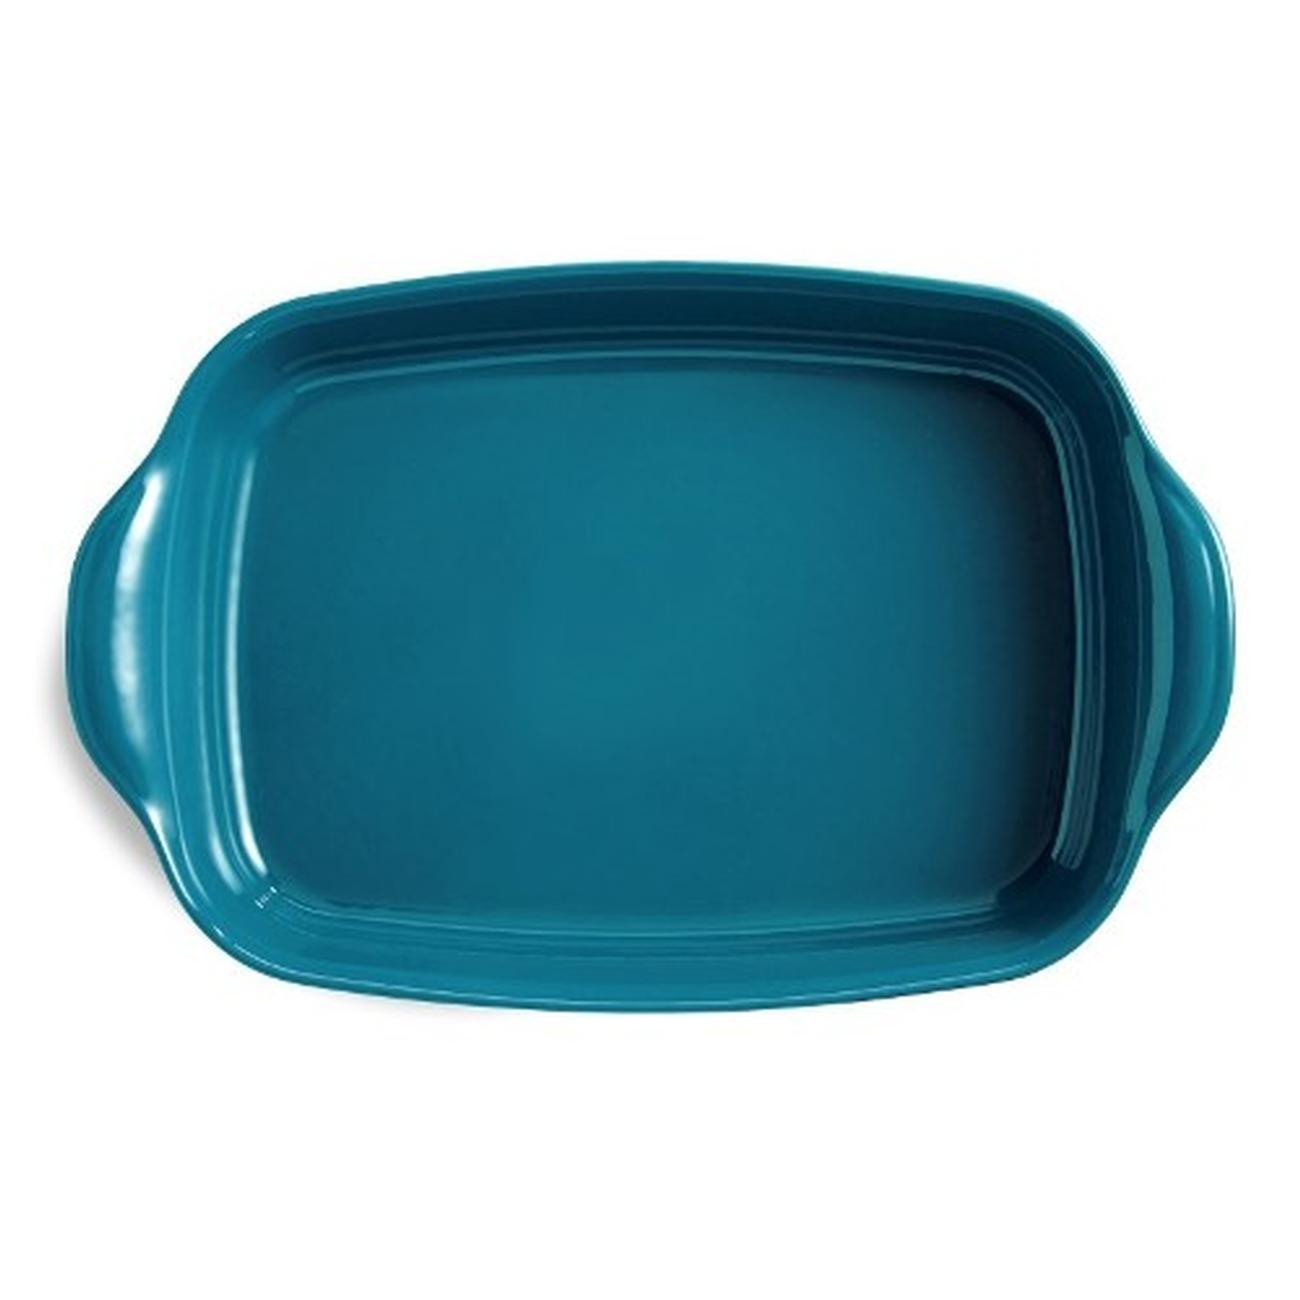 emile-henry-rectangular-oven-dish-large-blue-calan - Emile Henry Mediterranean Blue Rectangular Oven Dish Large